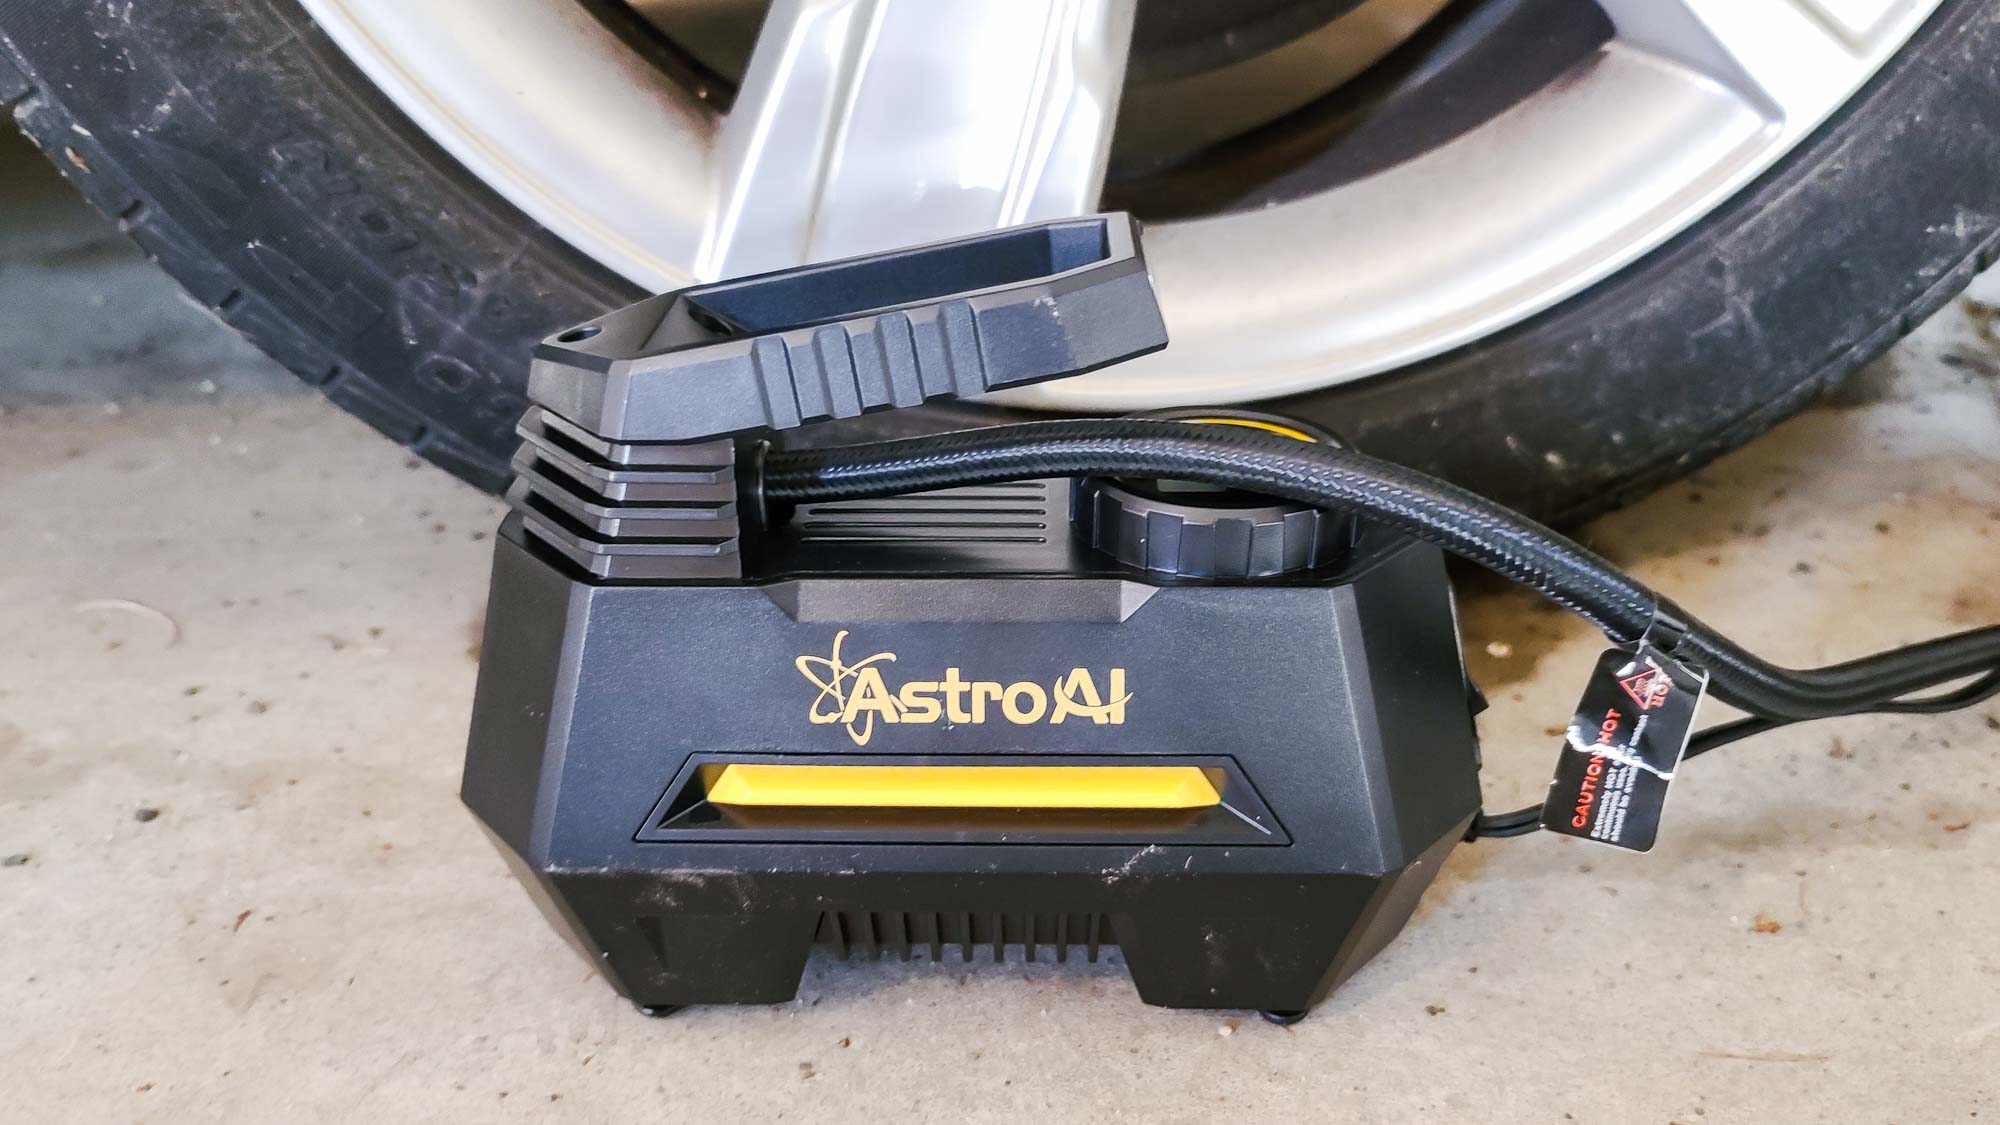 Compresseur d'air AstroAI gonflant le pneu de voiture